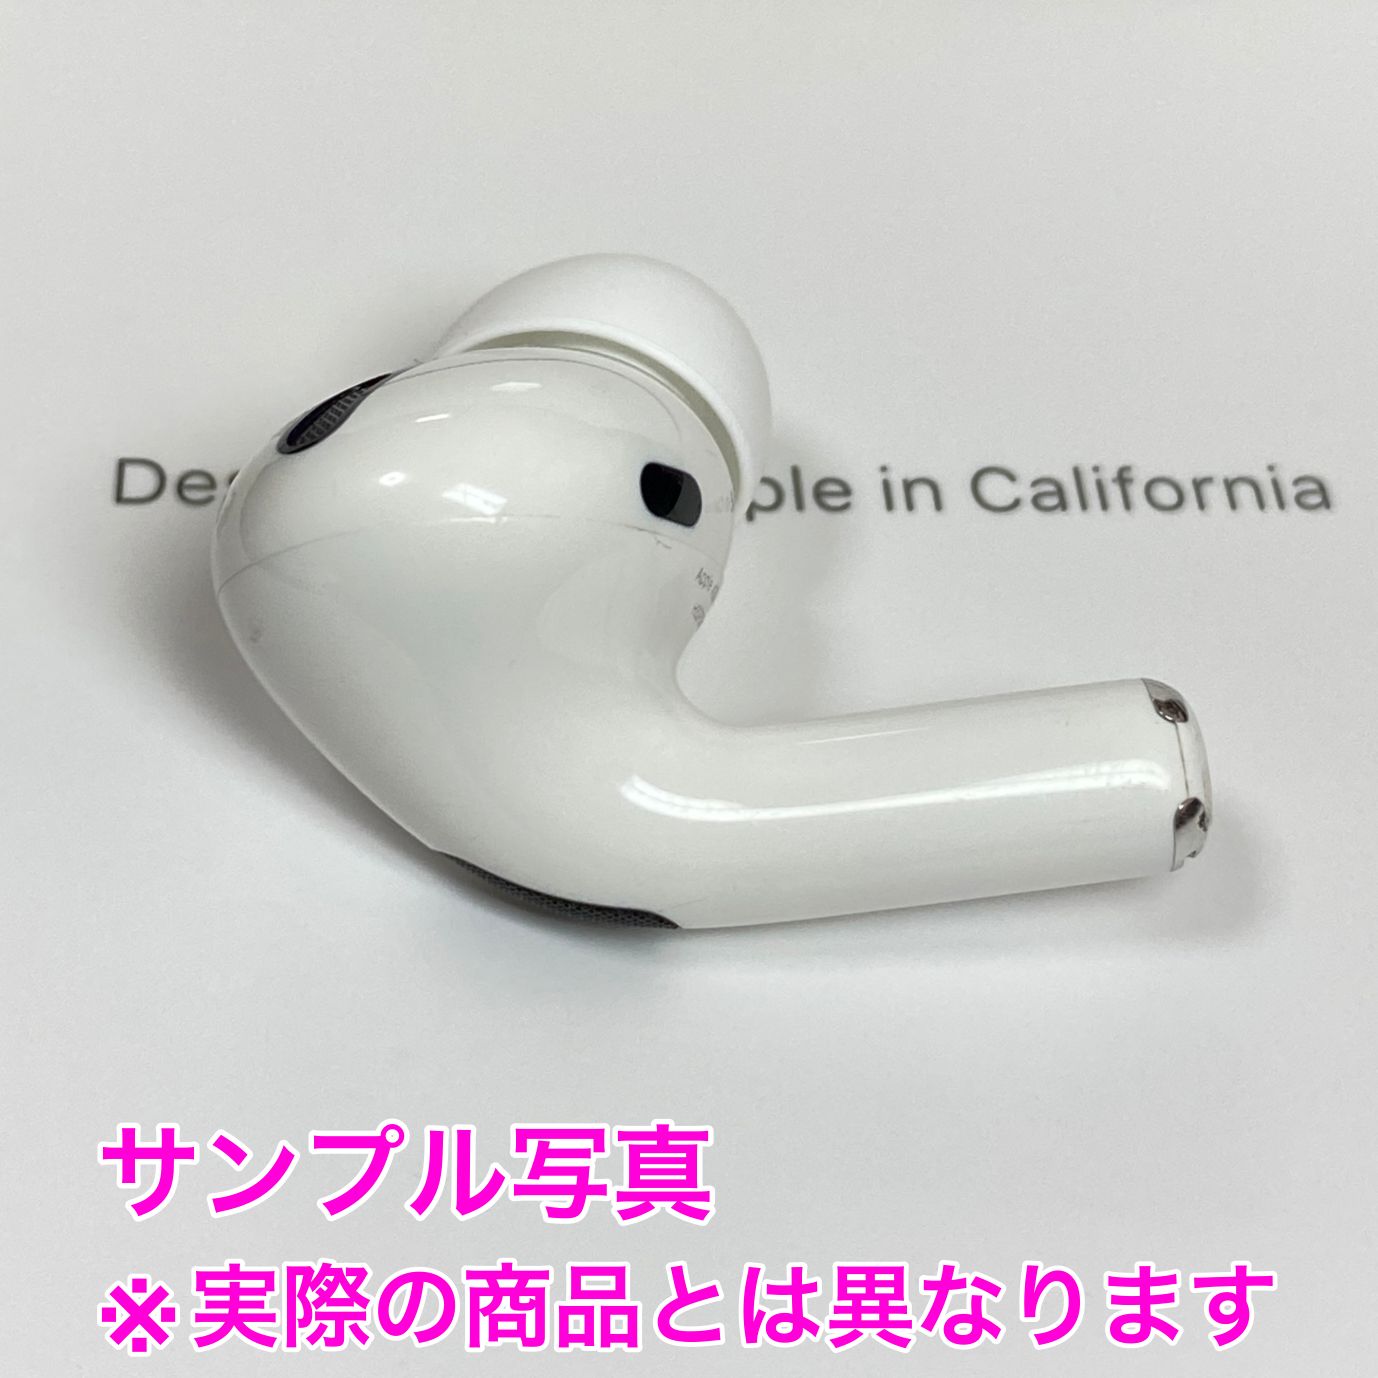 キズ有】AirPods Pro 第1世代 左耳のみ Apple正規品 - メルカリ